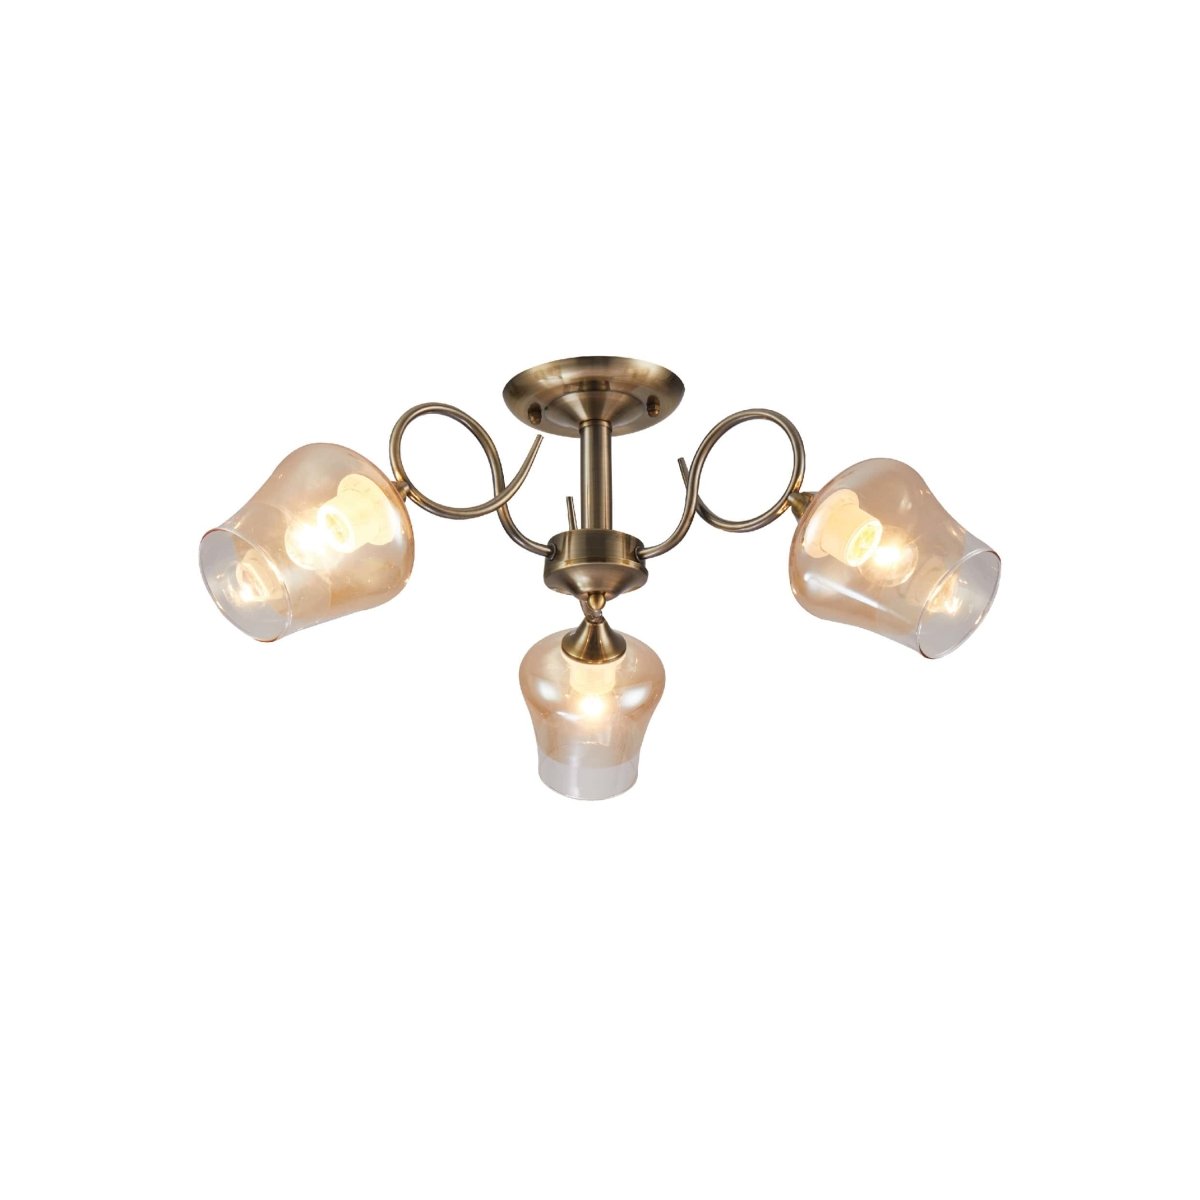 Main image of Amber Bell Glass Antique Brass Metal Semi Flush Ceiling Light | TEKLED 159-17122